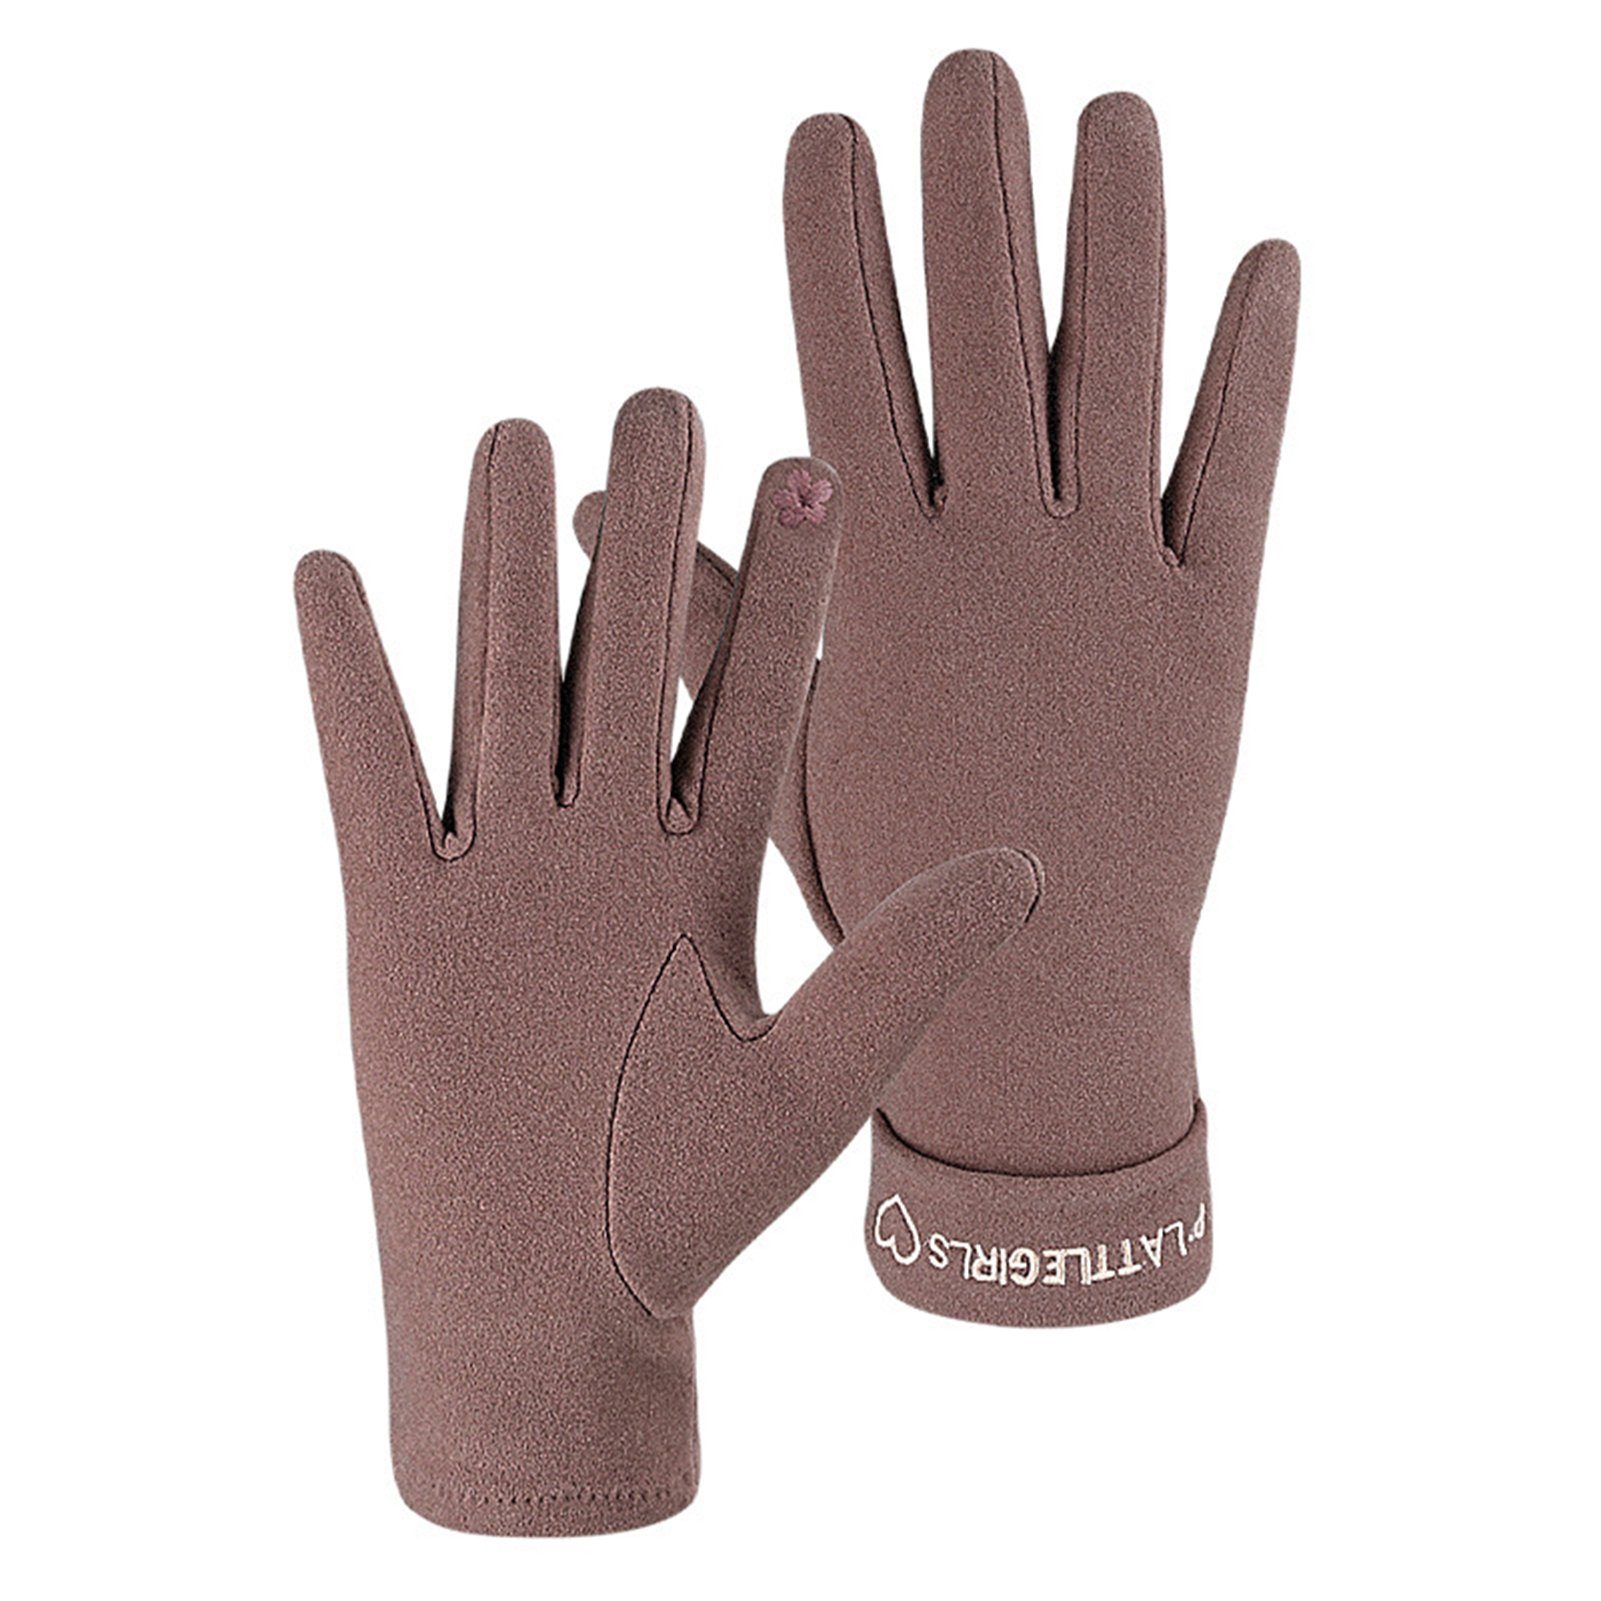 Rutaqian Strickhandschuhe 1 Paar Damen Winter Touchscreen Handschuhe Warm Fleece Gefüttert Warme Fingerhandschuhe für Damen Sport Cameo Braun